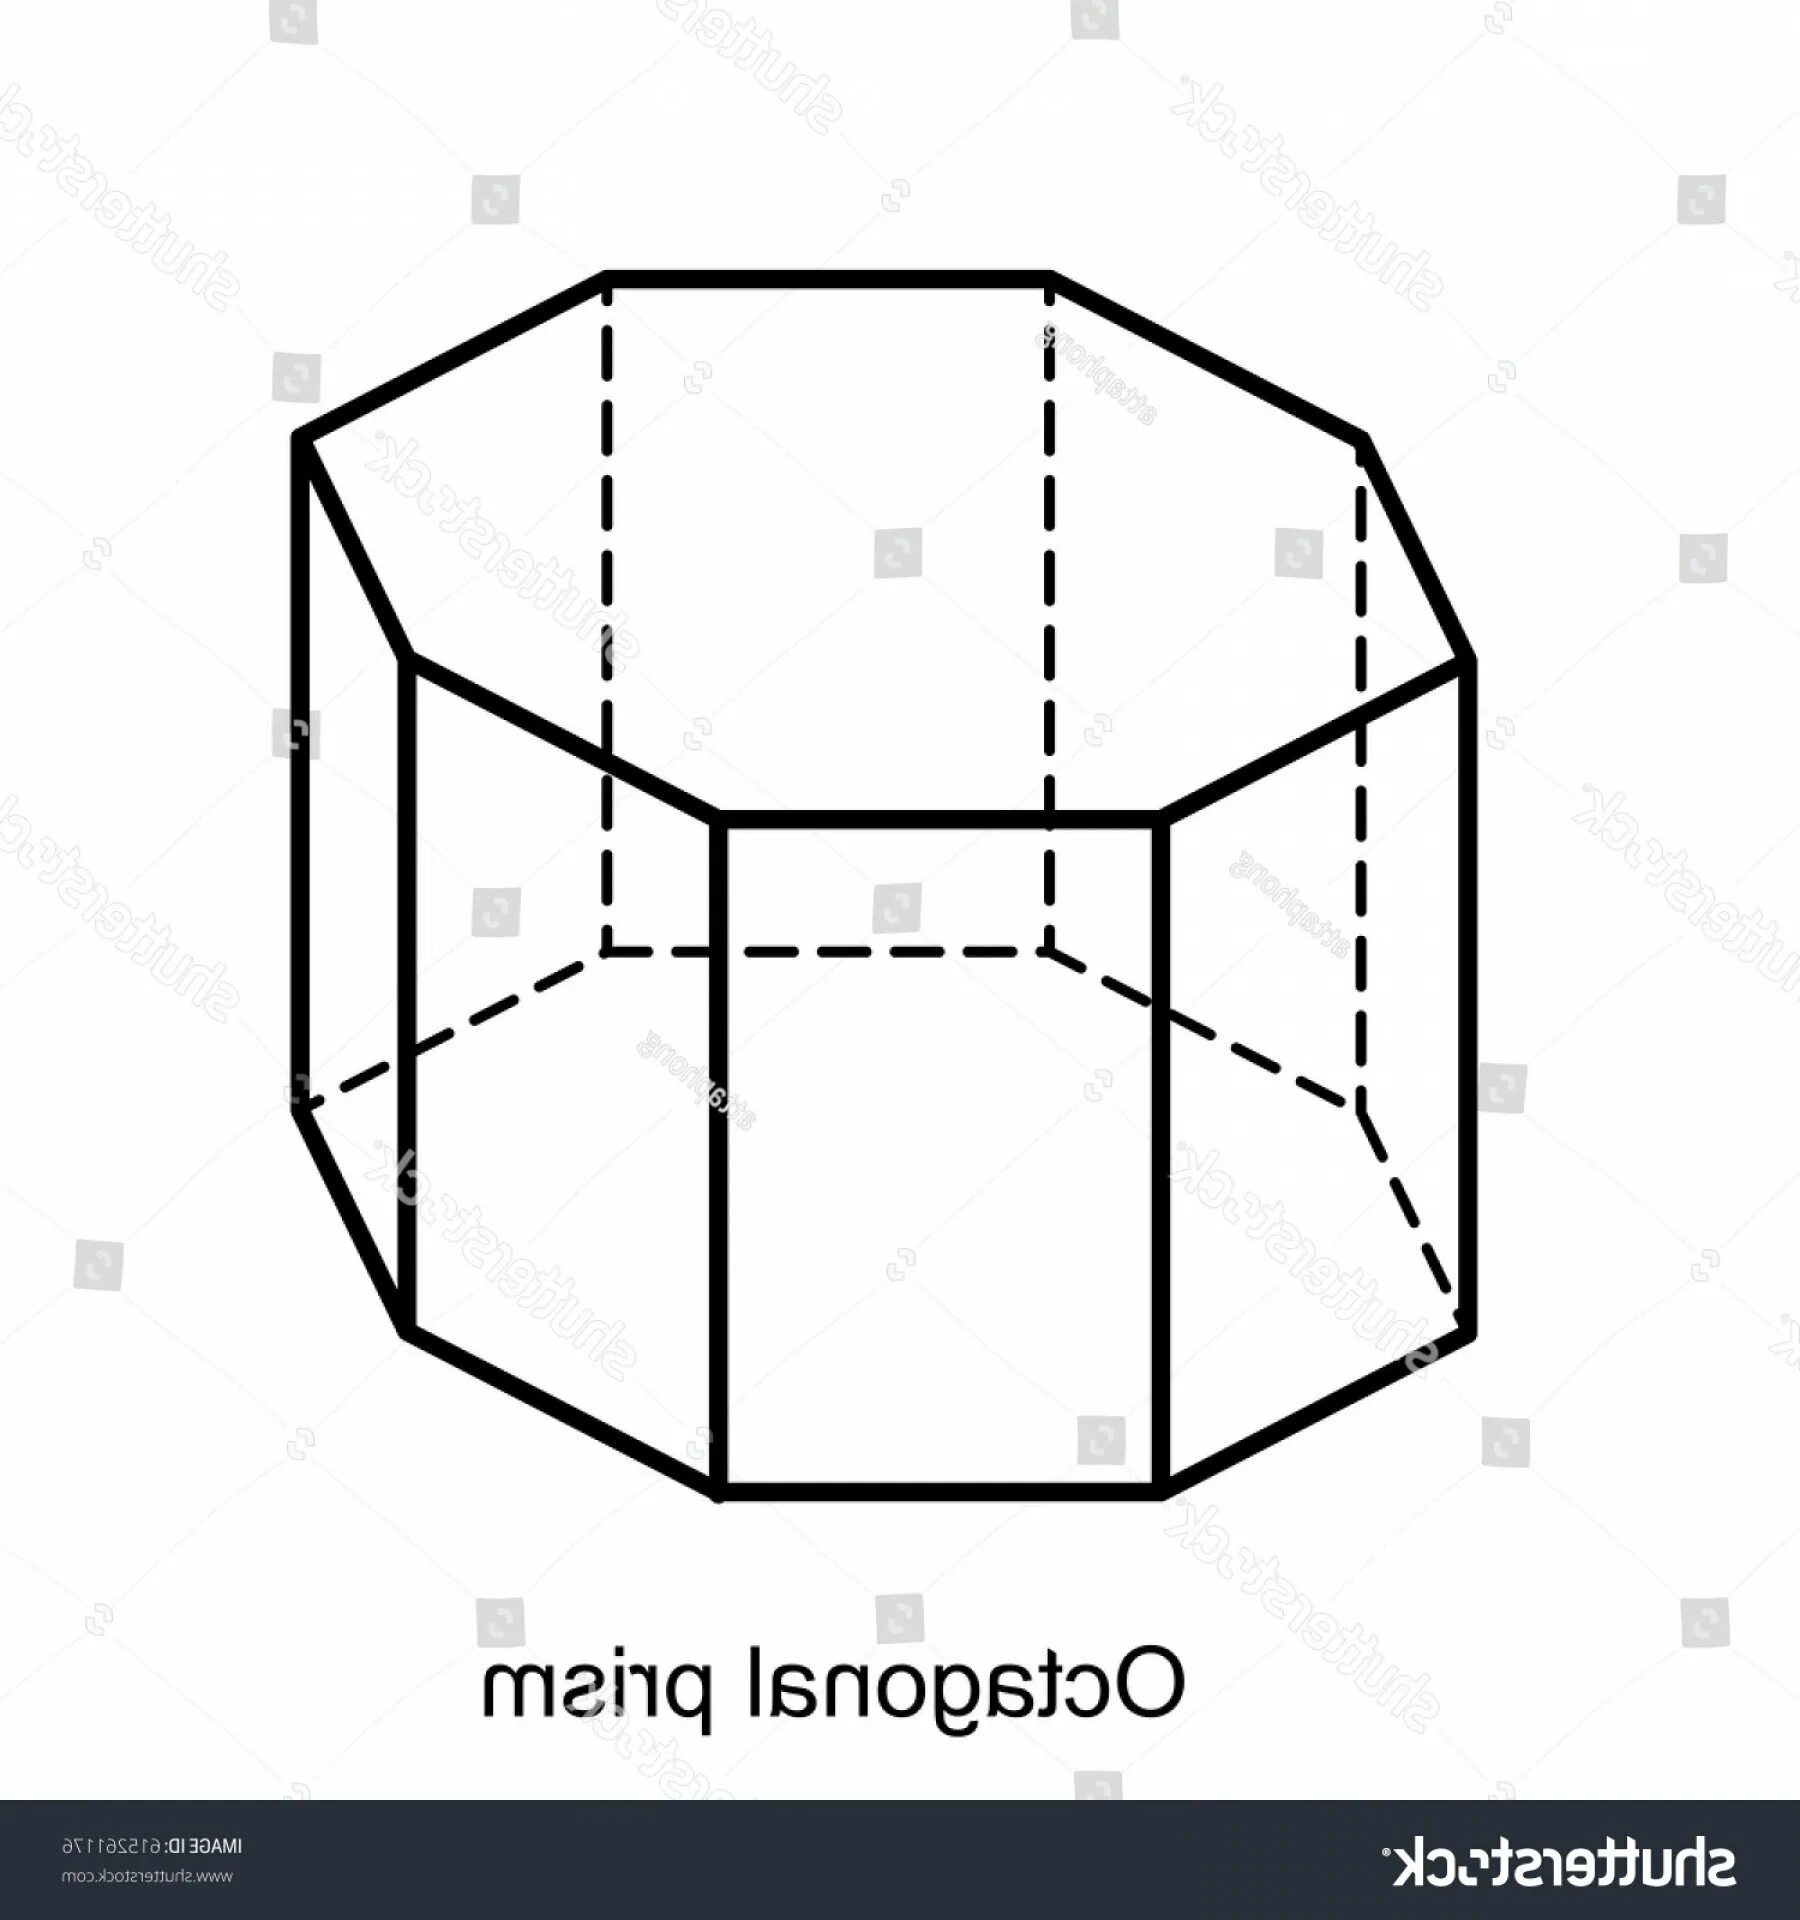 Изобразить шестиугольную призму. Правильная восьмиугольная Призма. Правильная восьмигранная Призма это. Правильная восьмиугольная Призма чертеж. Правильная 8 угольная Призма.